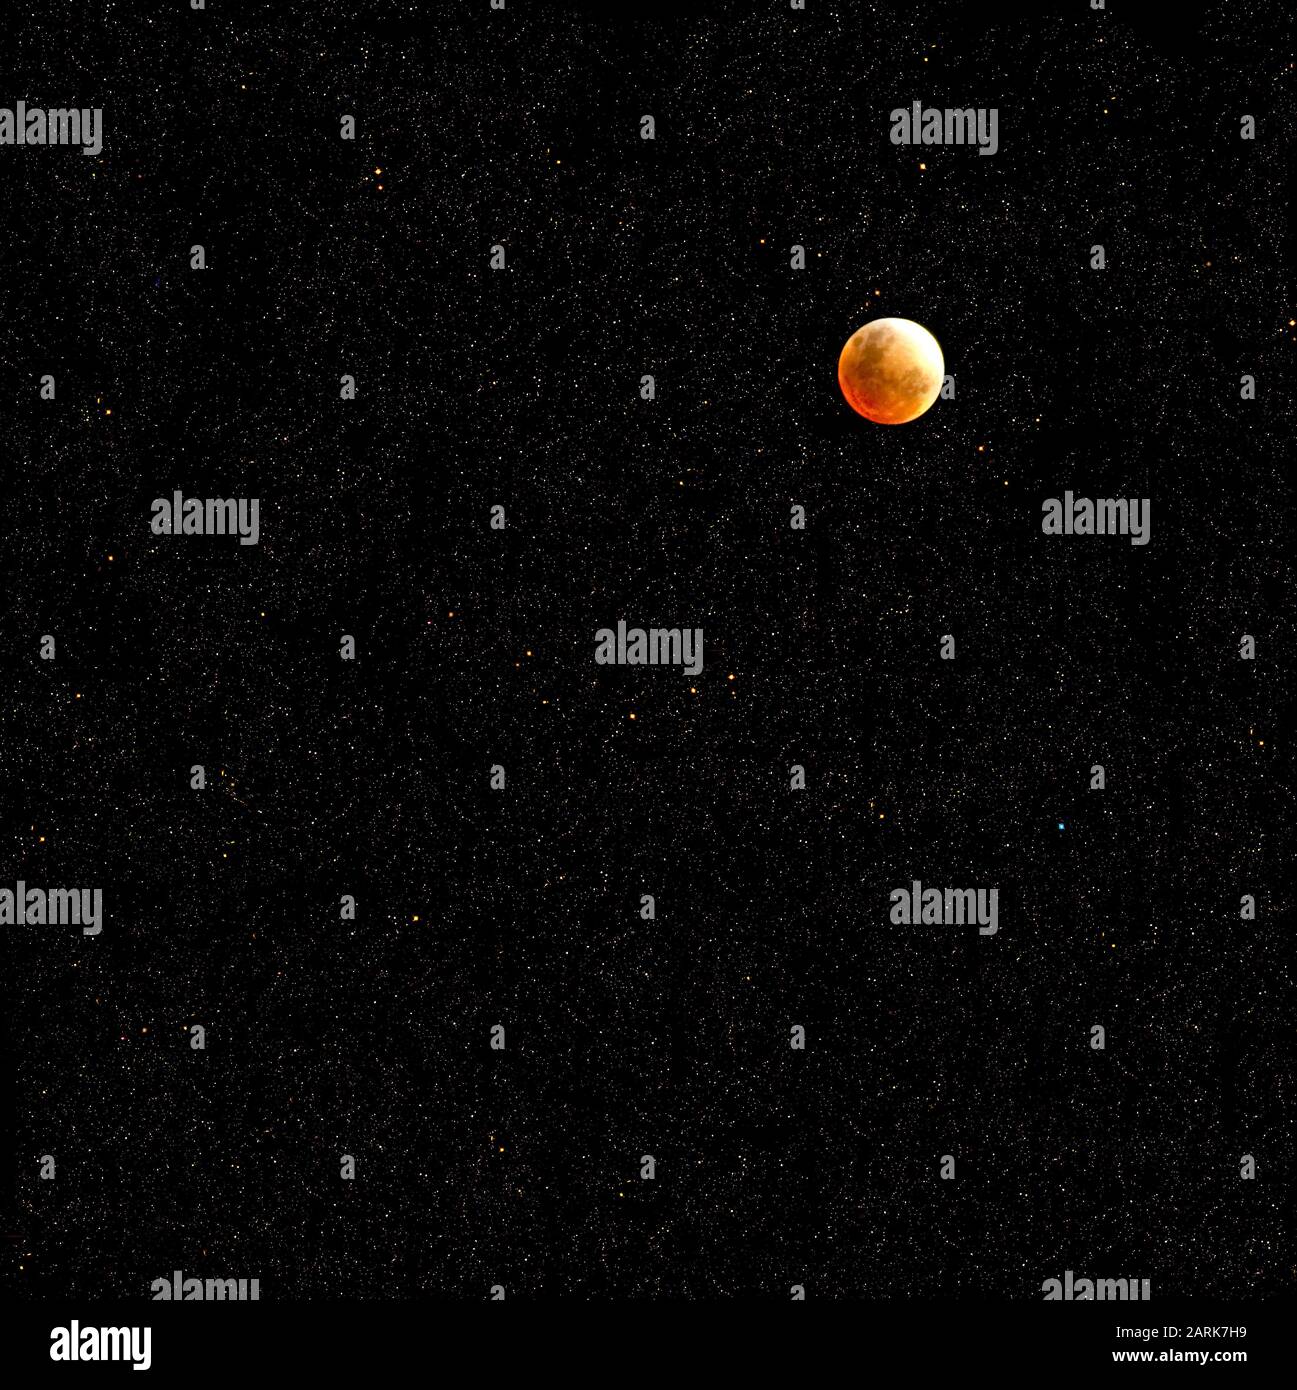 Ein Sternenhimmel mit dem Erdmond, der während einer Mondfinsternis geschossen wurde, mit einer Collage von Sternen, die von der NASA aufgenommen wurden. Stockfoto